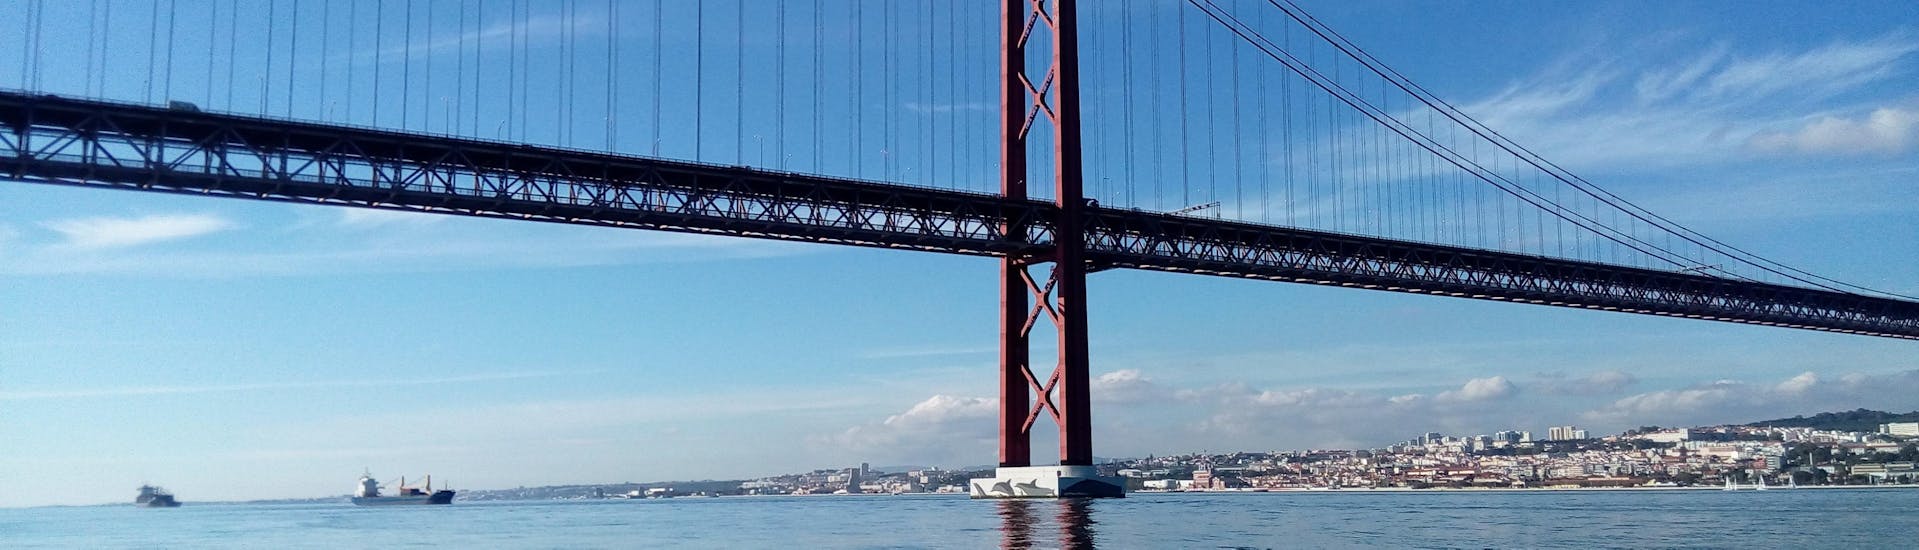 El majestuoso Ponte Vasco da Gama, que se puede admirar durante el paseo en velero por el Tajo incluyendo Puente Vasco da Gama con Lisbon by Boat.